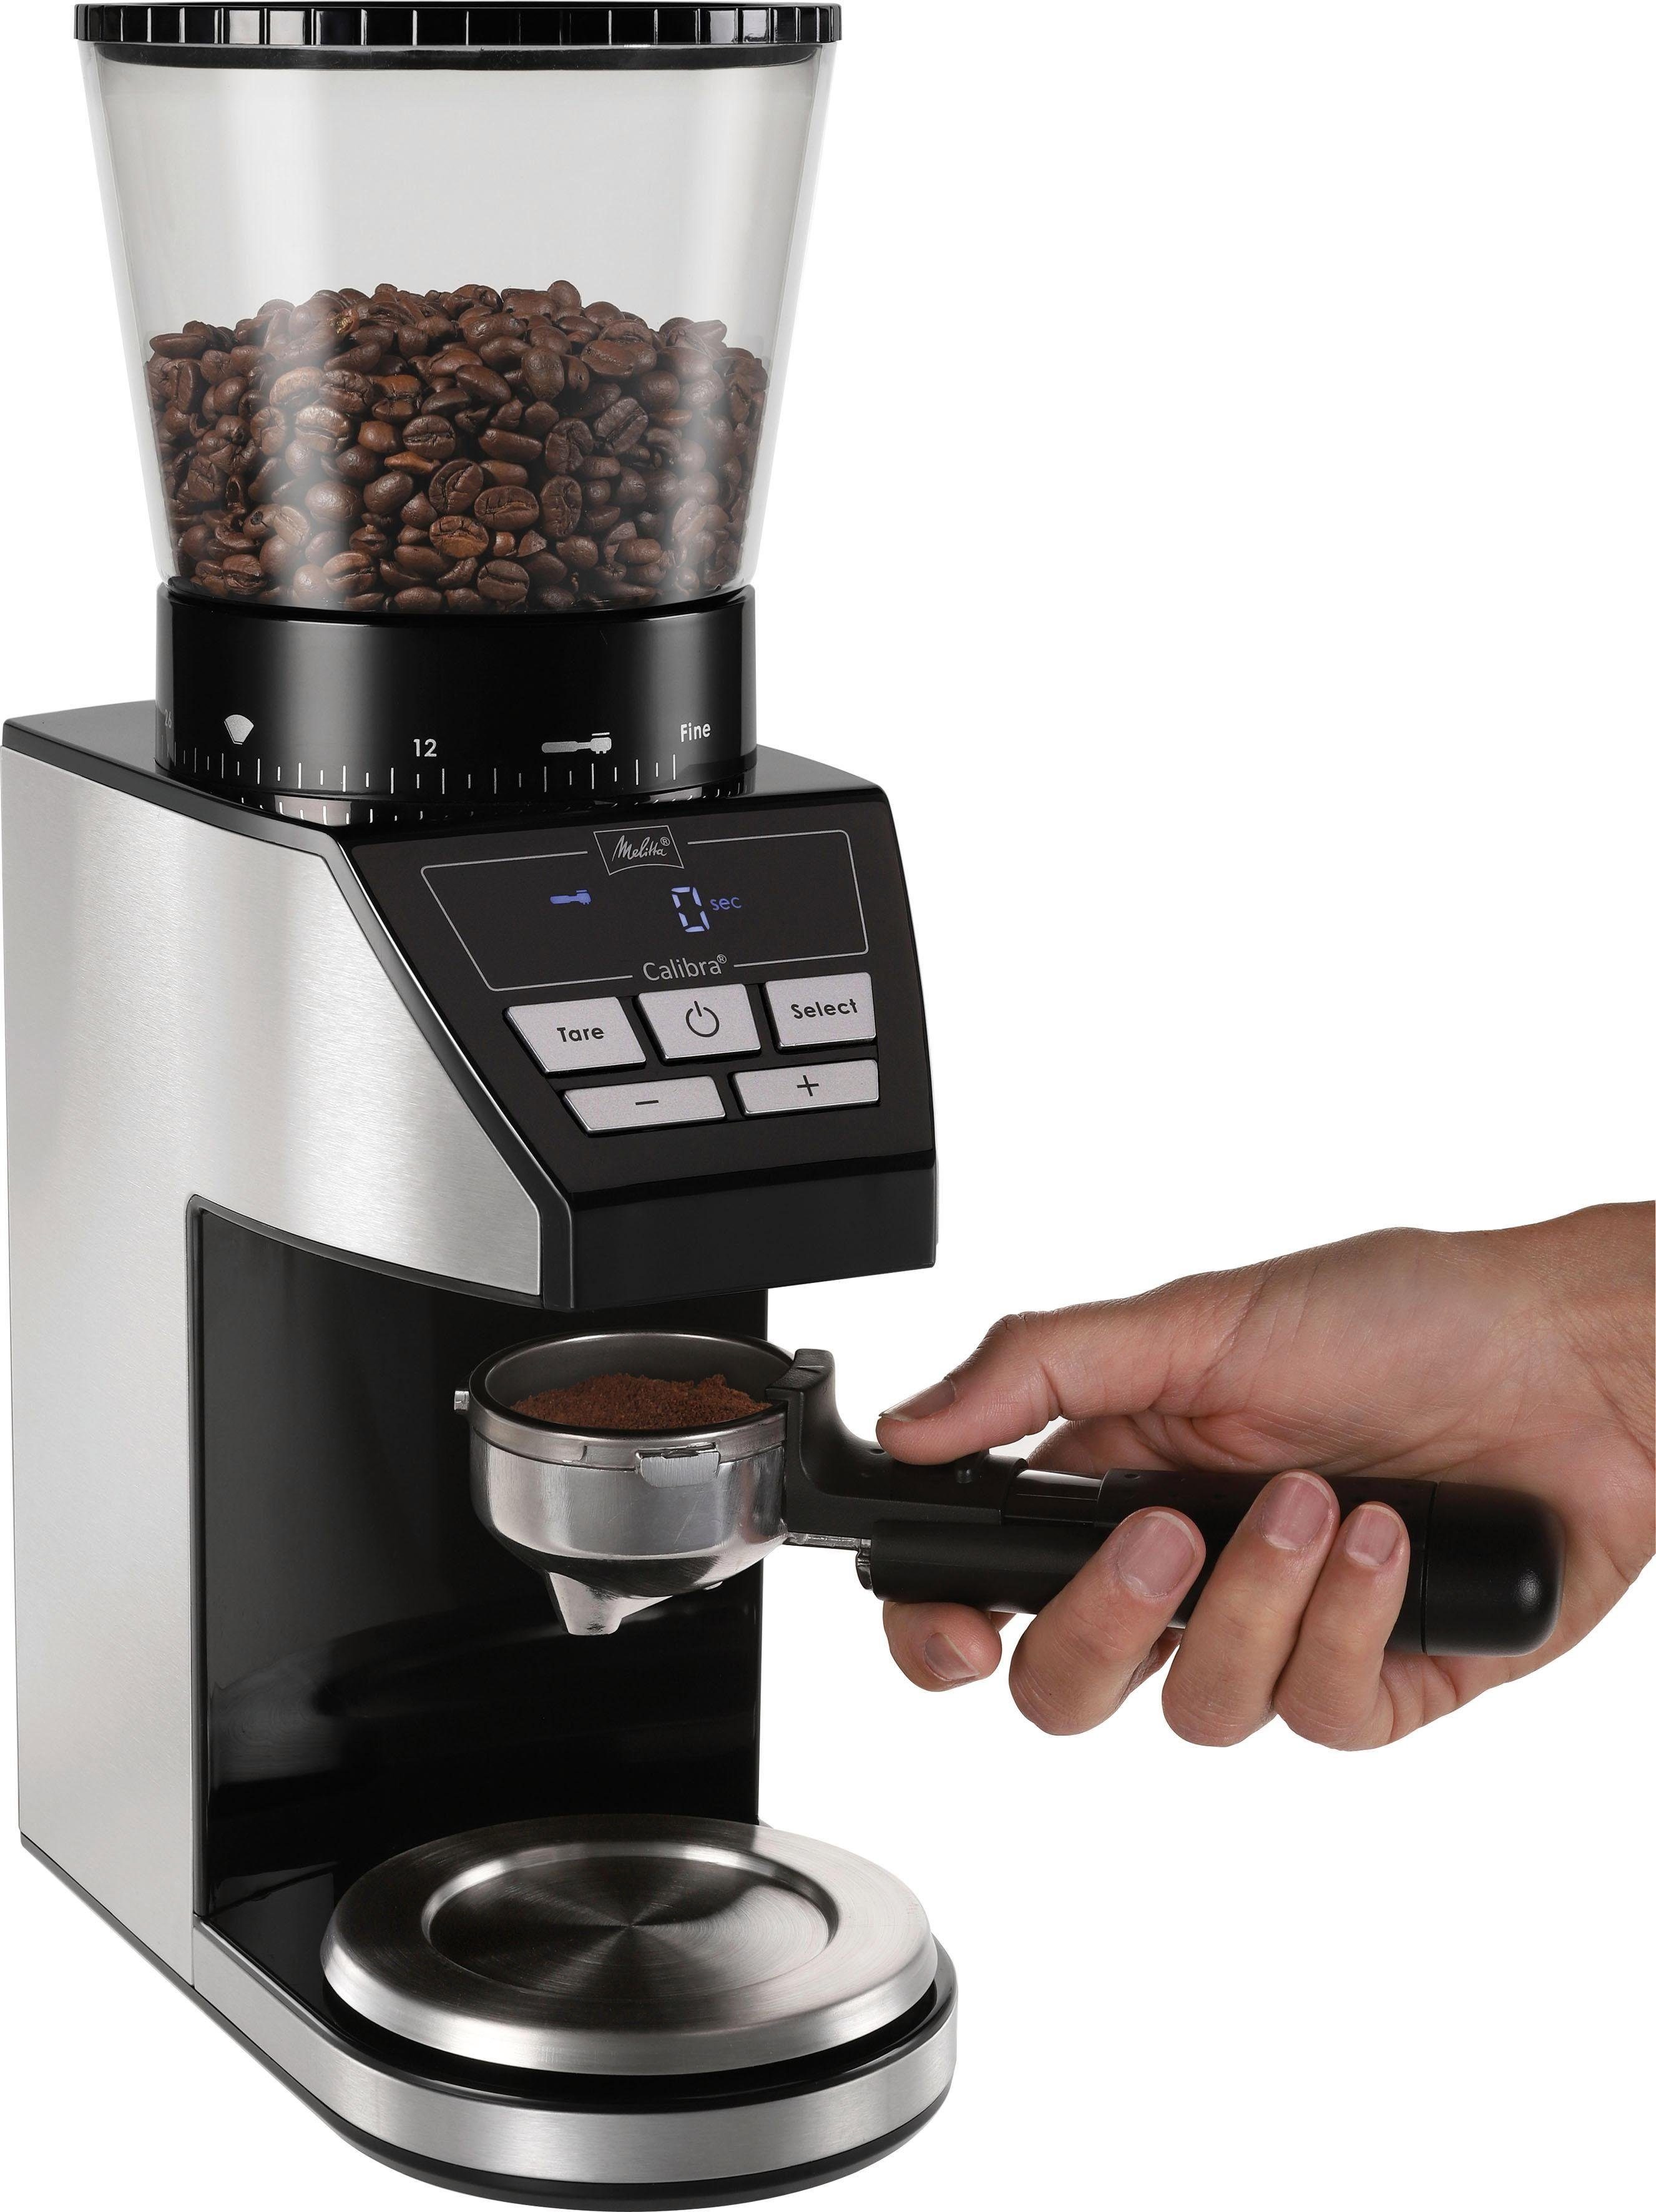 Melitta Kaffeemühle g 1027-01 schwarz-Edelstahl, 160 Calibra Kegelmahlwerk, 375 Bohnenbehälter W